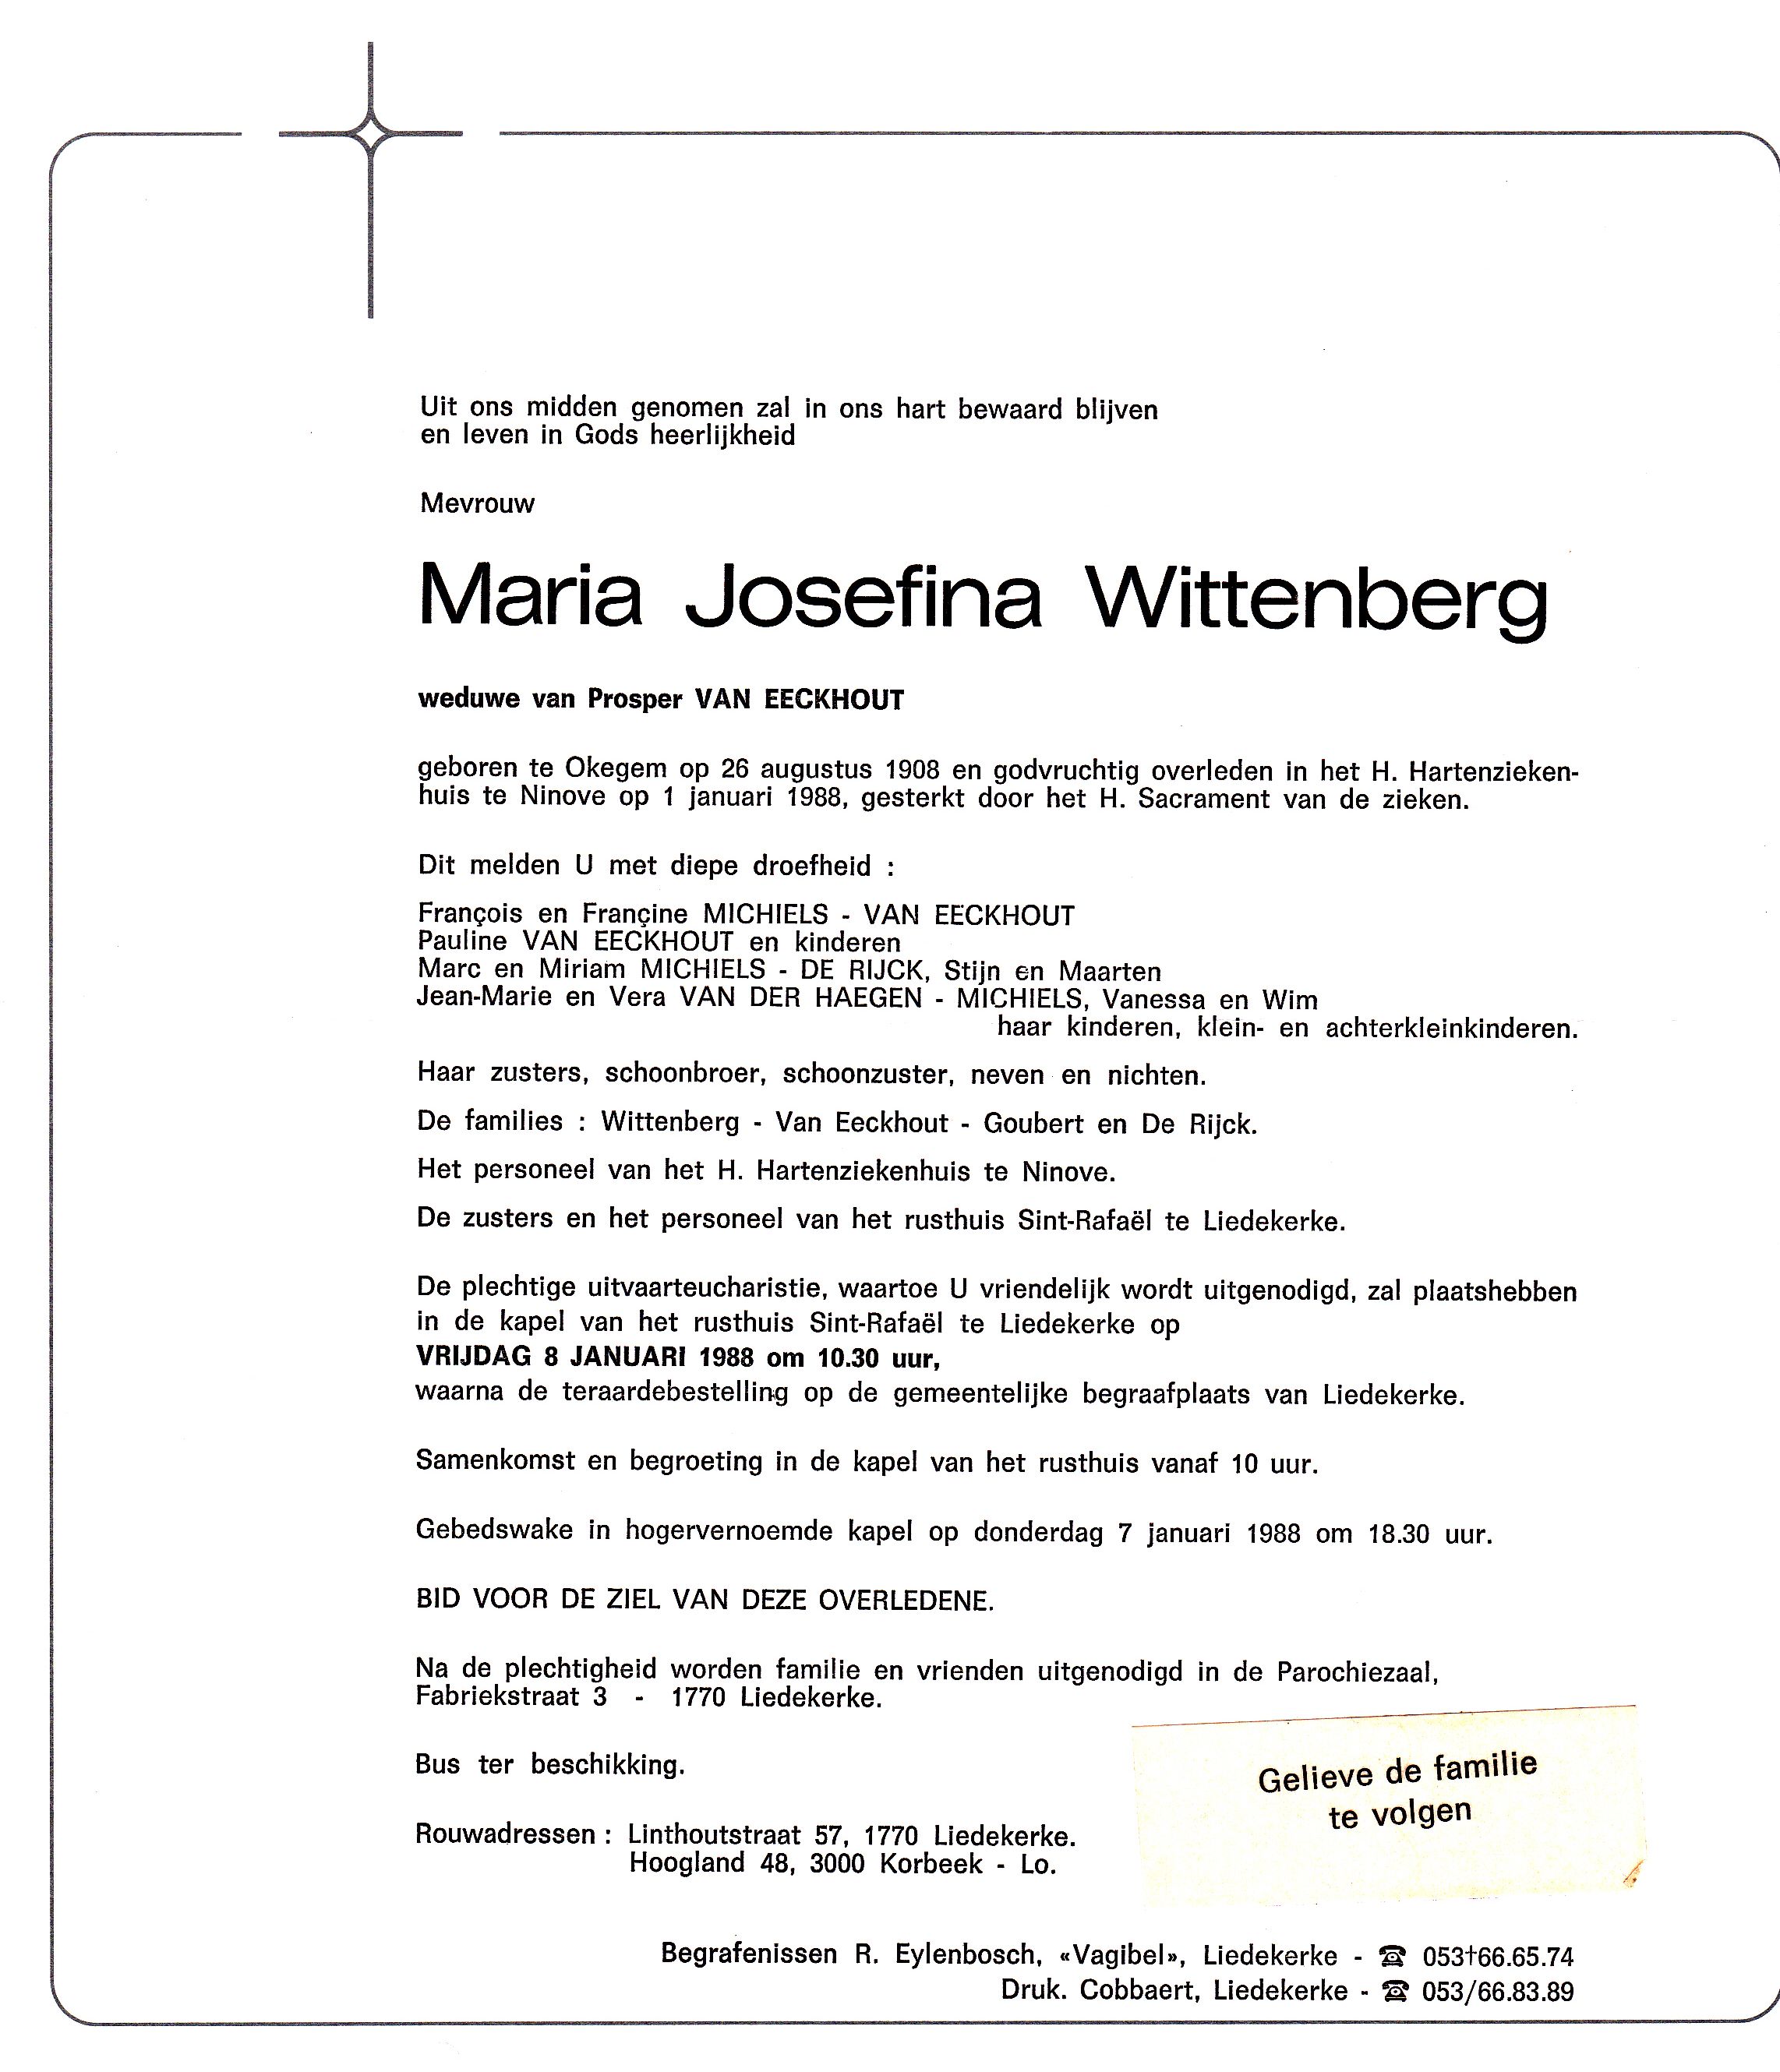 Wittenberg Maria Josephina  